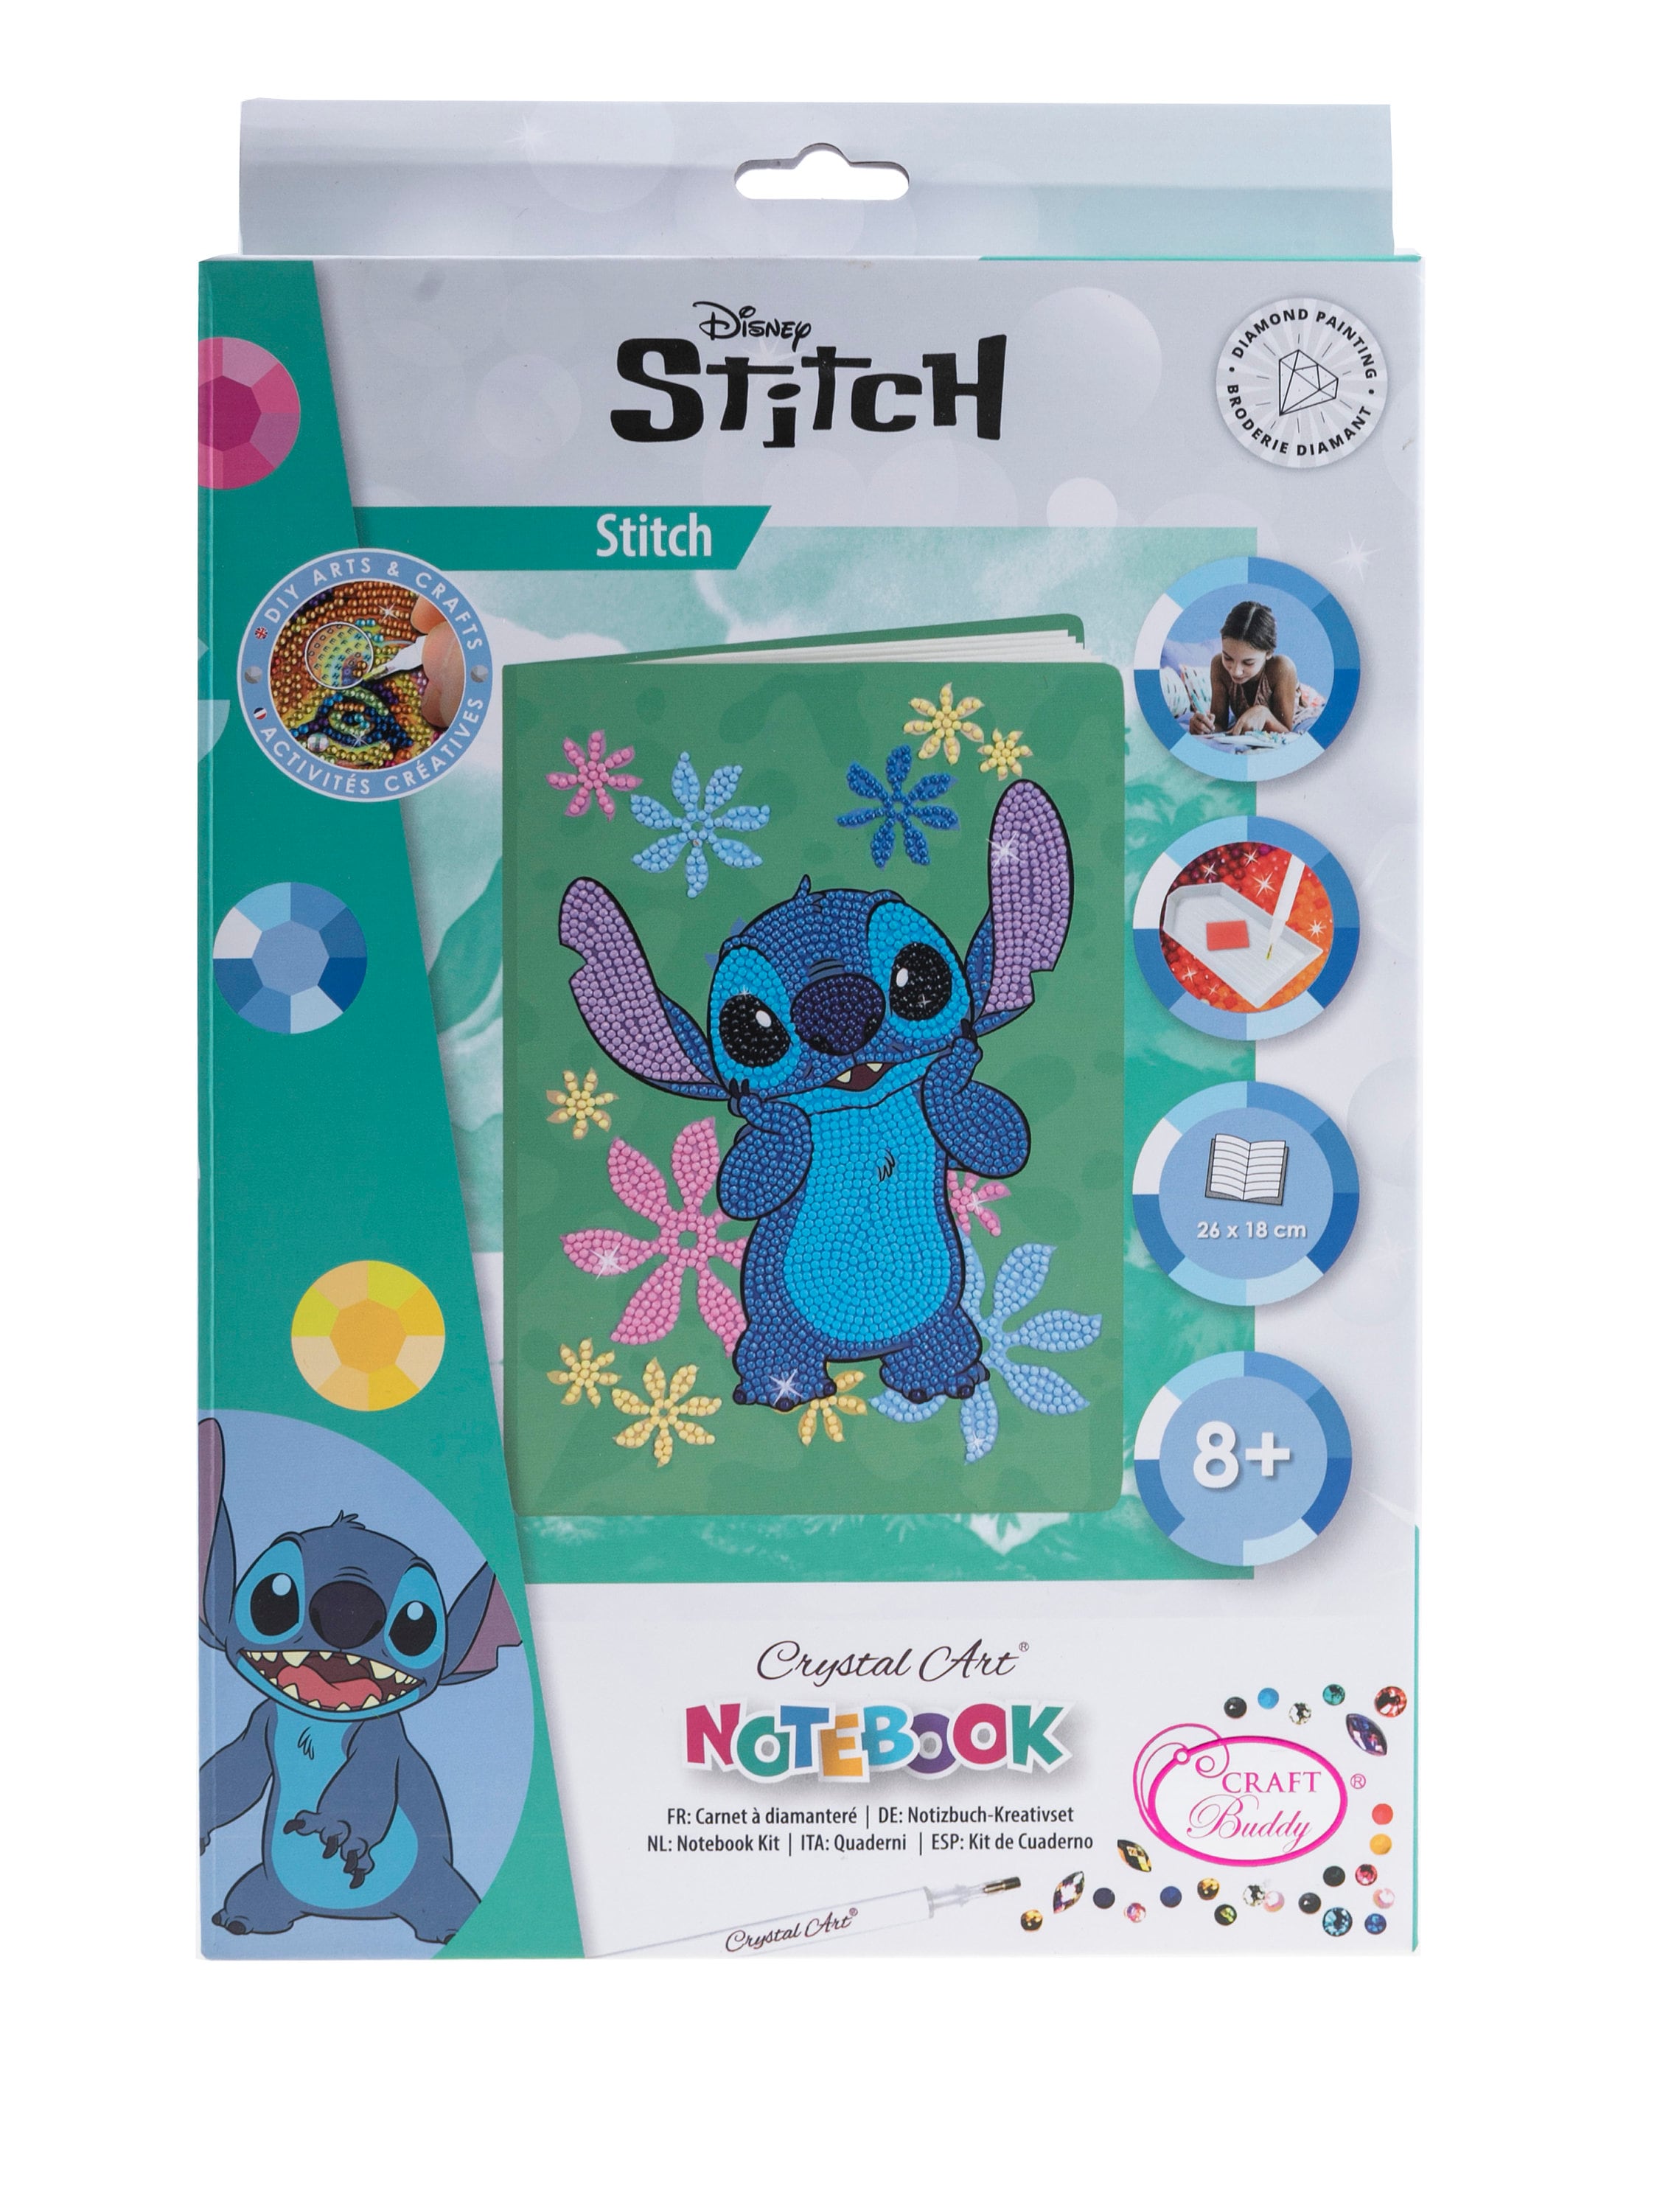 Il existe désormais des pinceaux Lilo et Stitch (Photos)